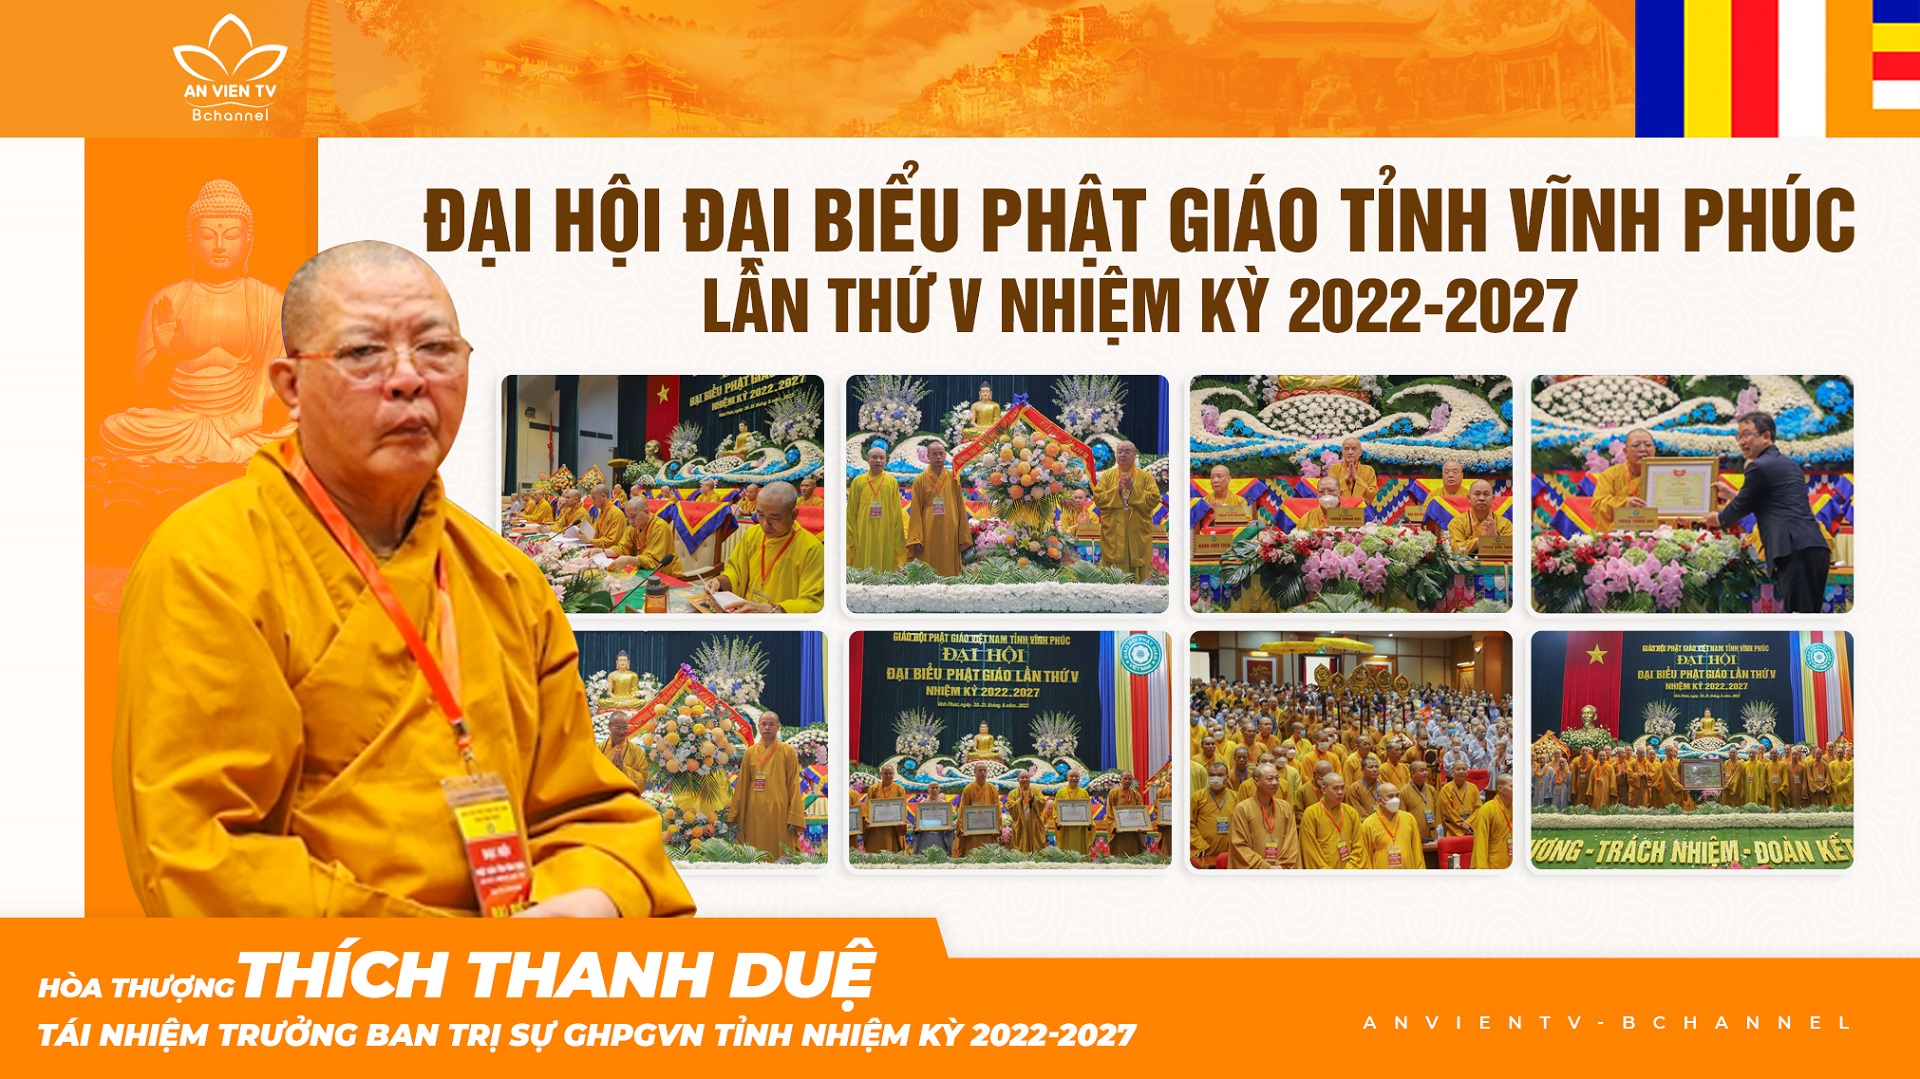 Vĩnh Phúc: Hòa thượng Thích Thanh Duệ được tái suy cử Trưởng ban Trị sự GHPGVN tỉnh (2022-2027)